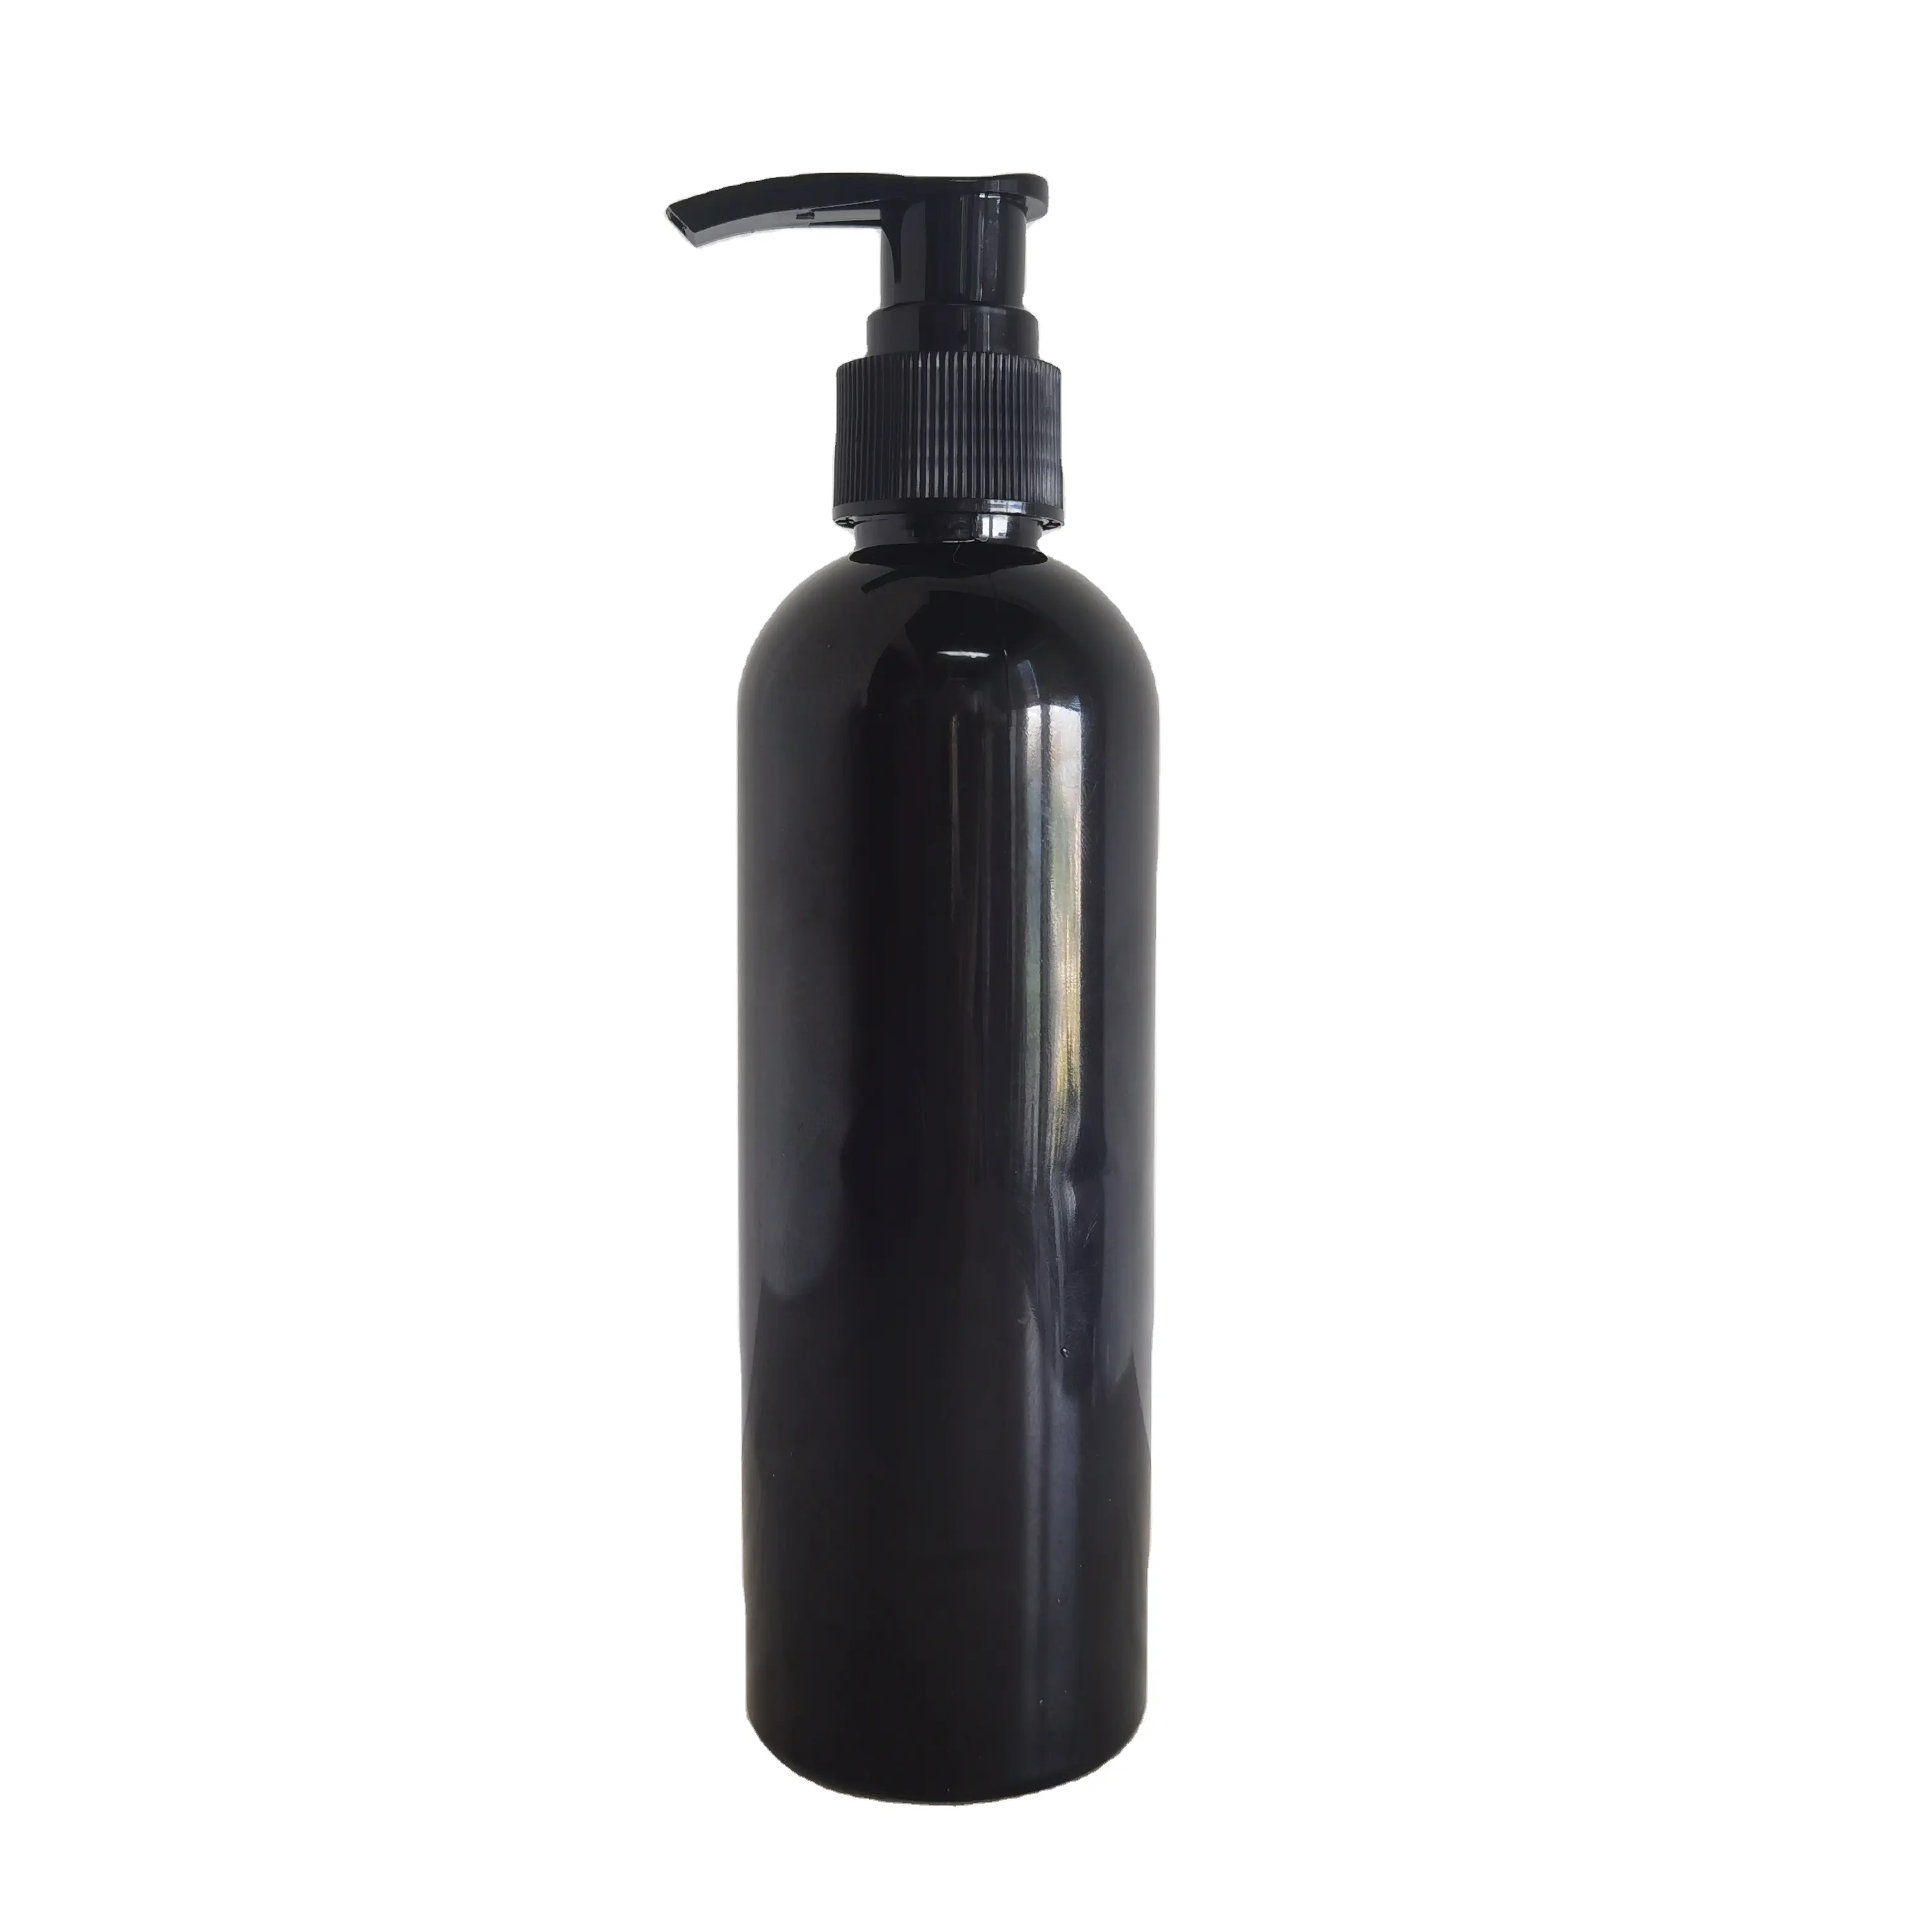 250ml 8 oz Black PET Leere Lotion Pump Spray Kosmetik flasche Mit Pumpsp ender für Shampoo-Verpackung